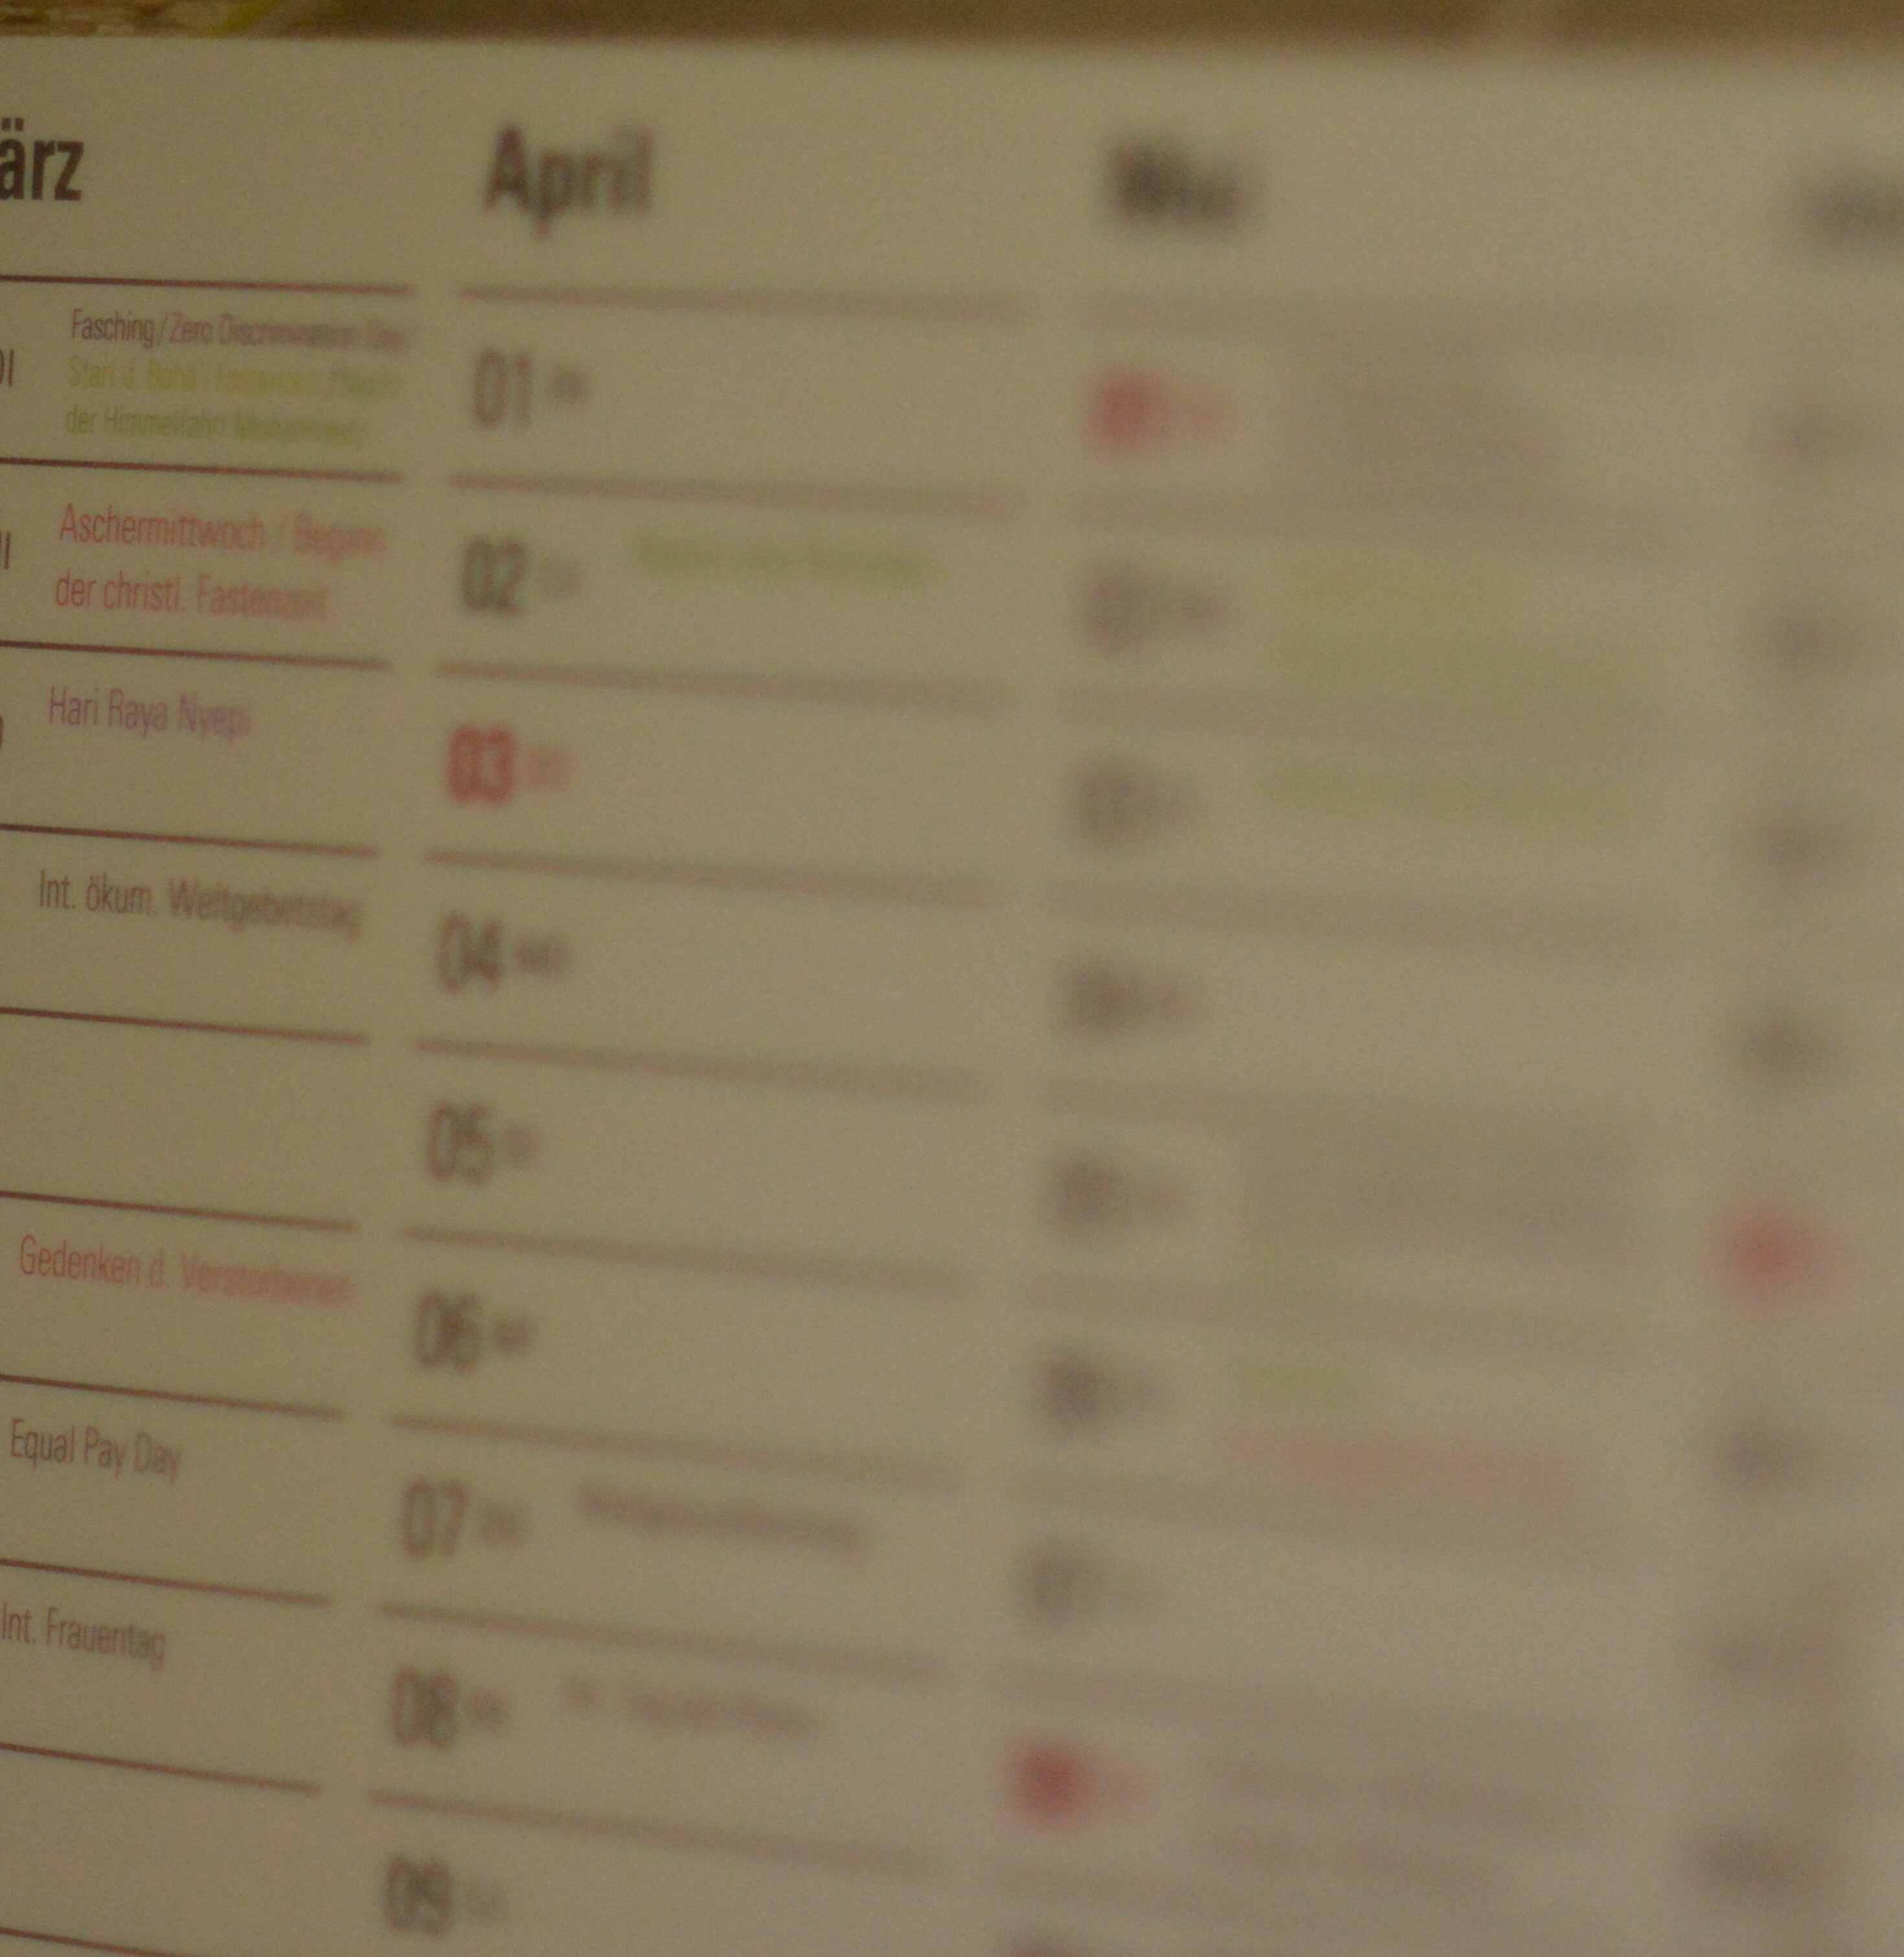 Beispielbild eines Kalenders